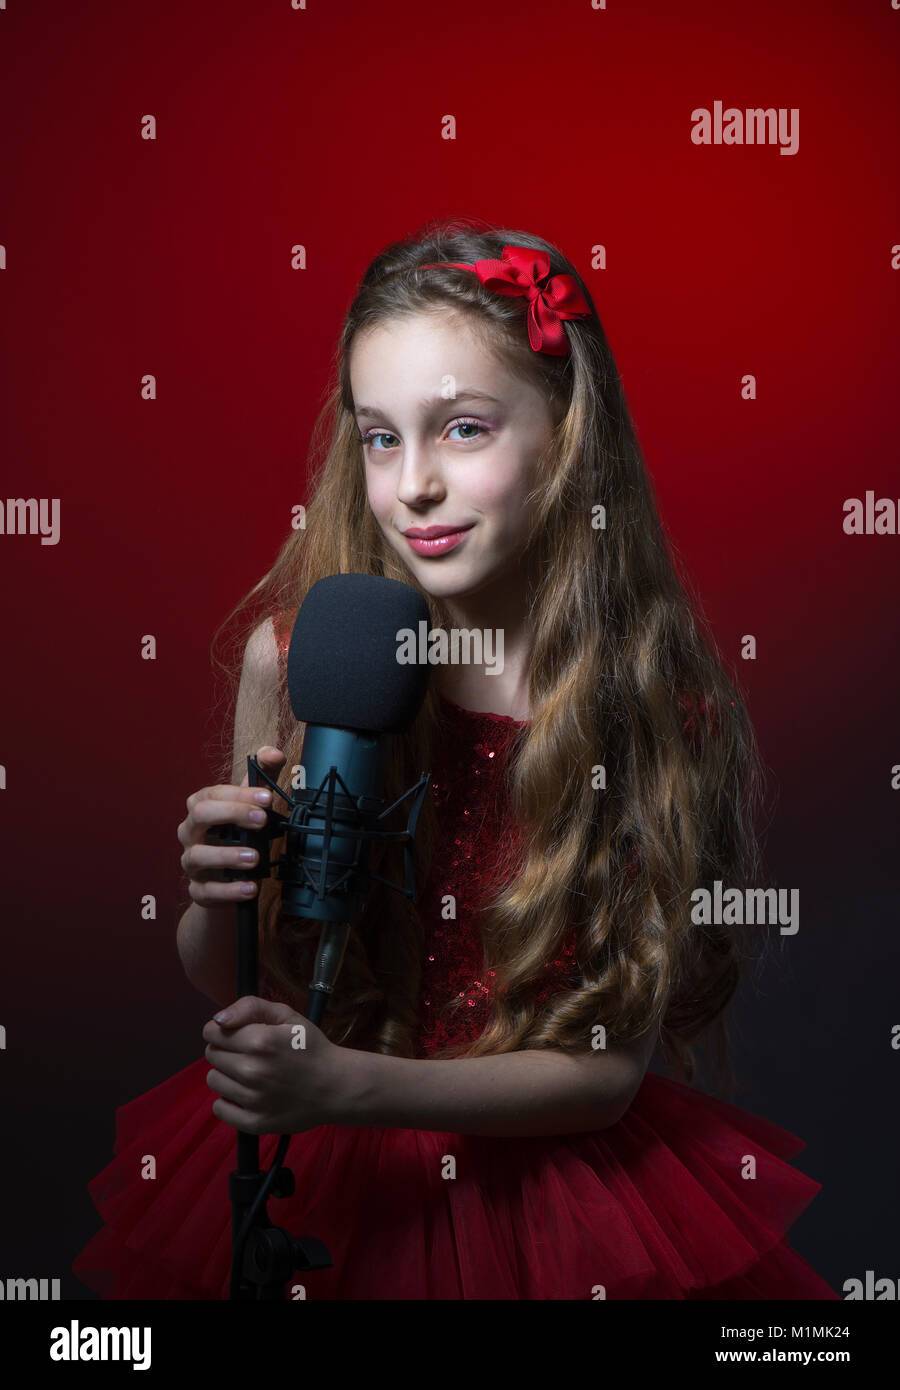 Ritratto di una ragazza con un microfono Foto Stock